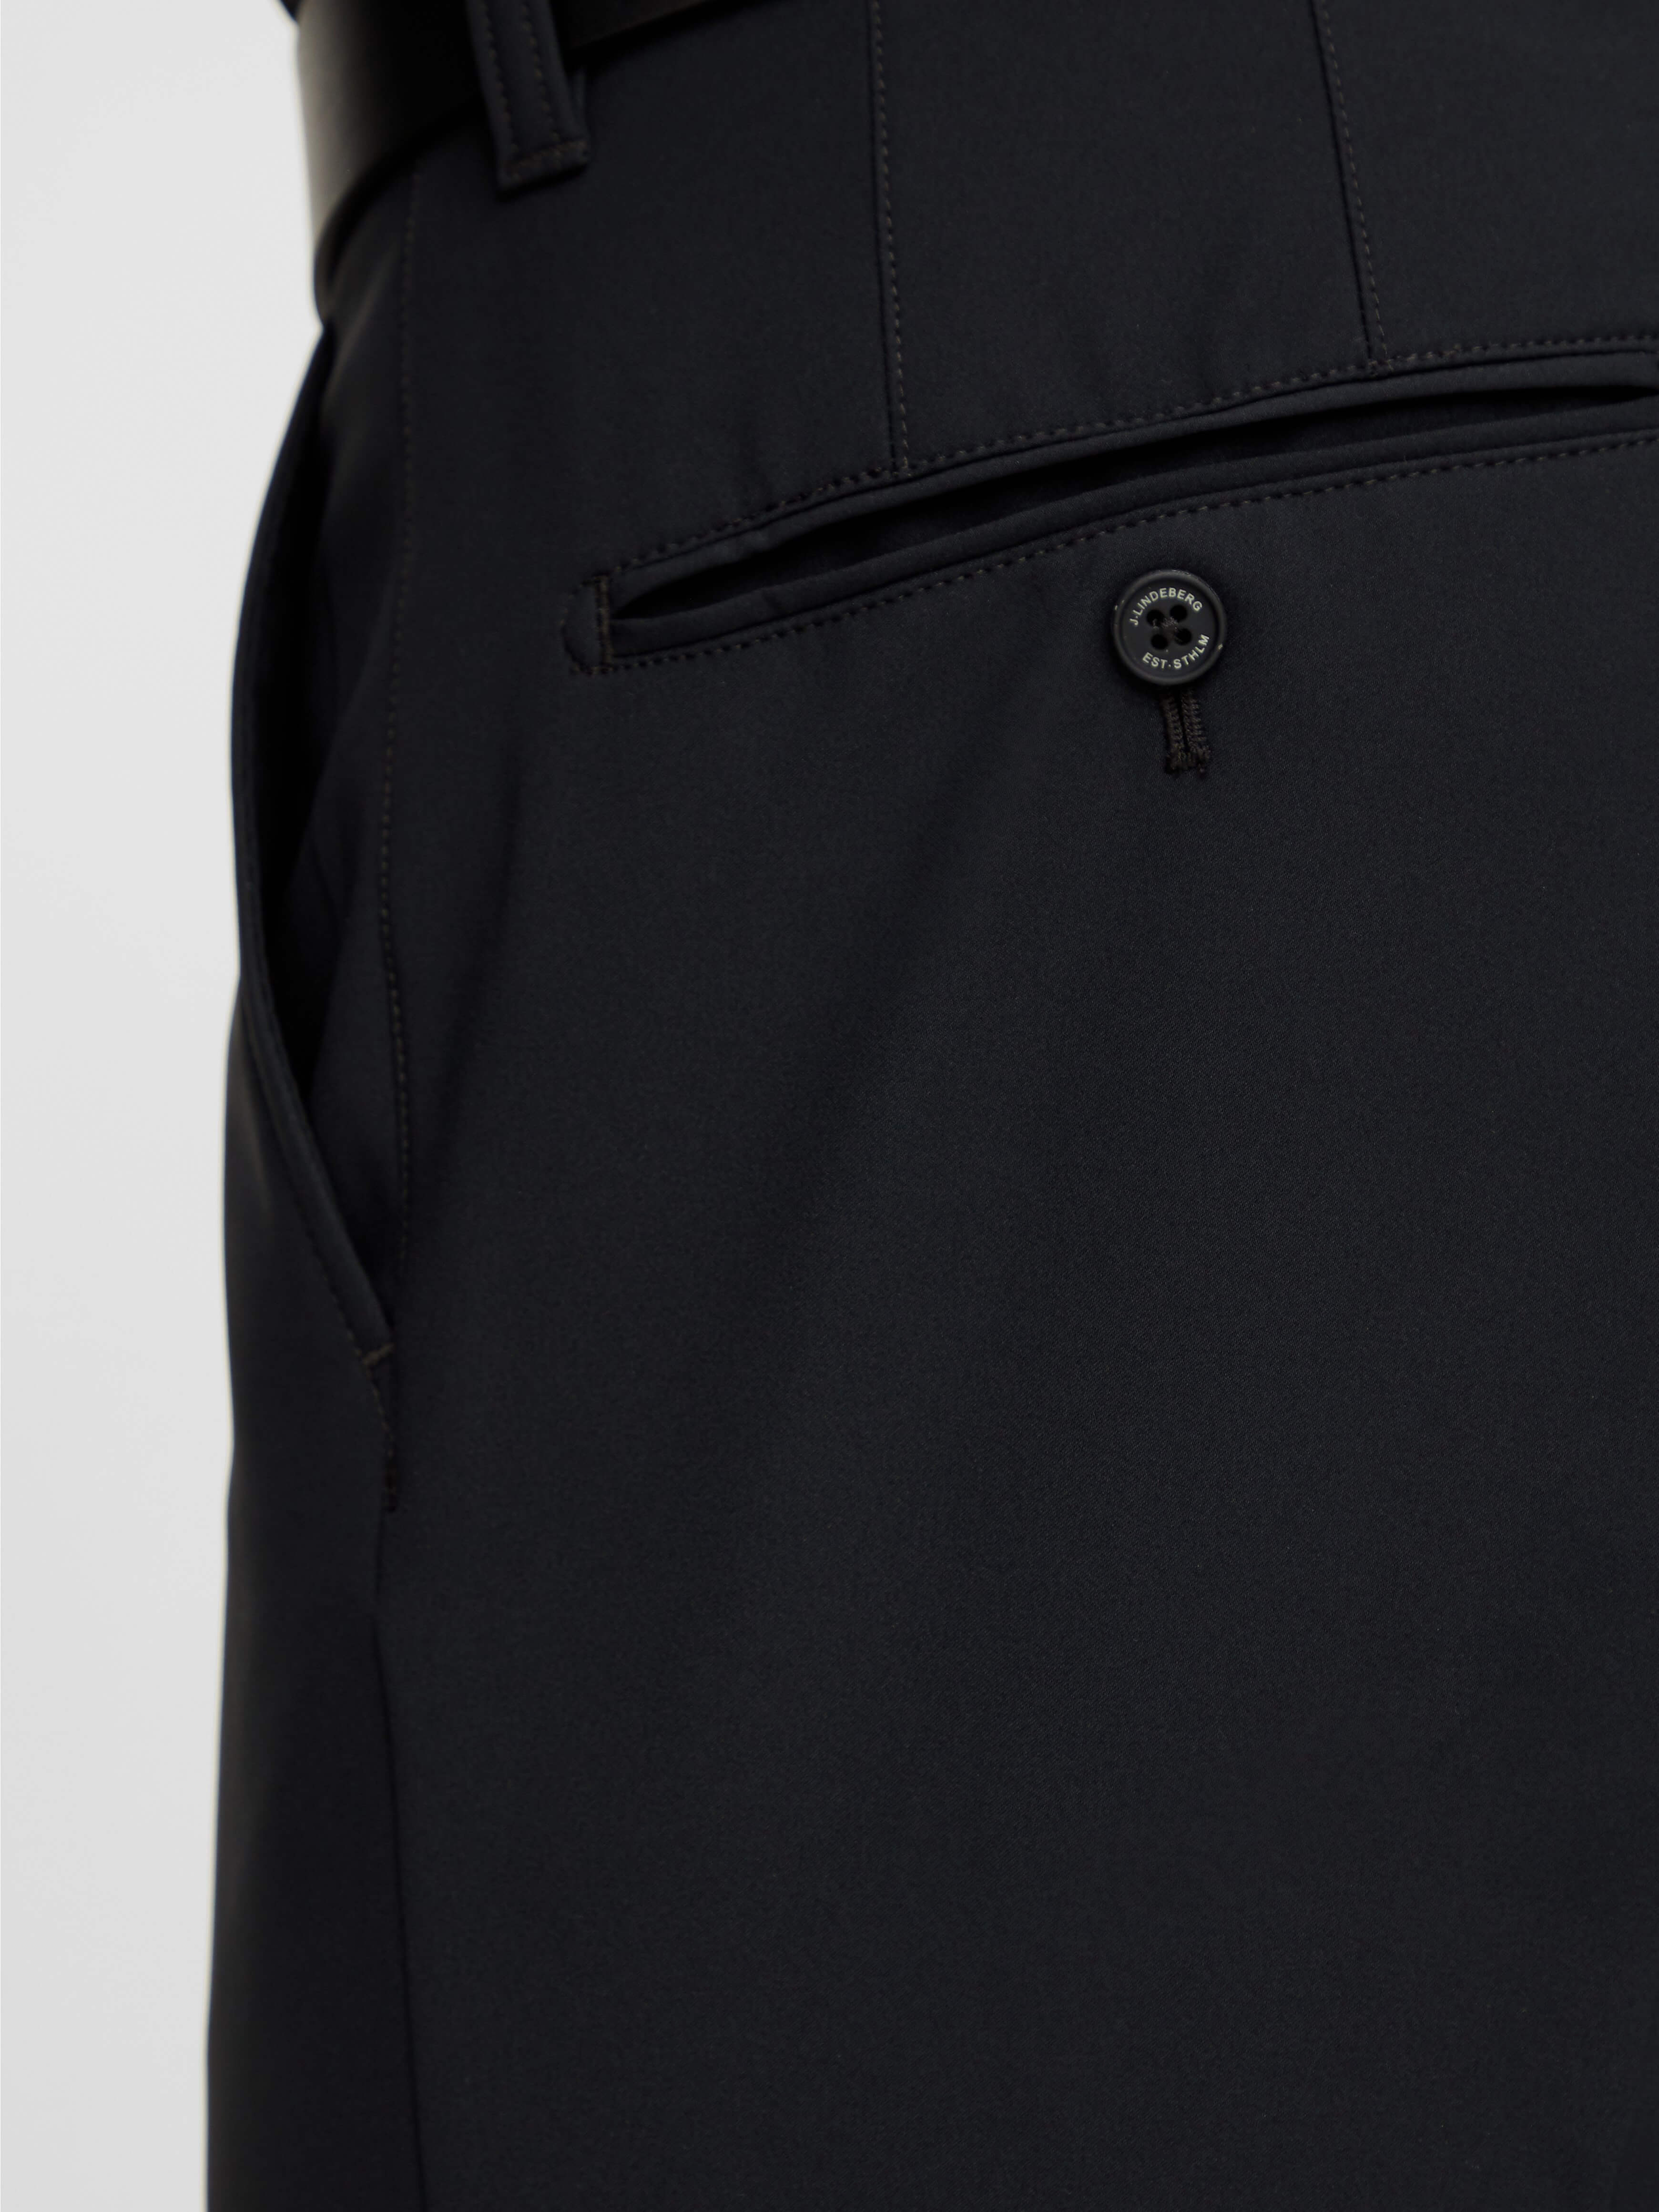 'Ellott Bonded' Thermal/Winter Fleece Golf trouser - MEN / AW20